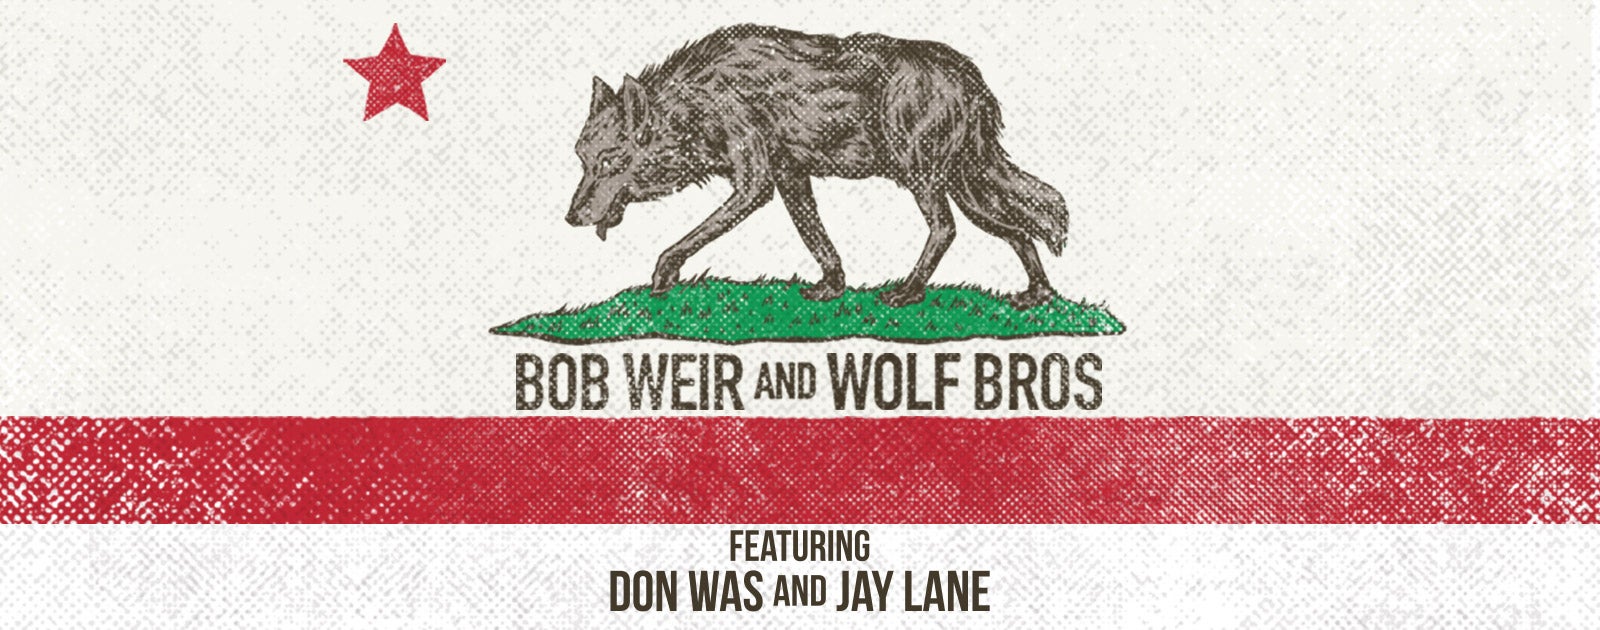 Bob Weir and Wolf Bros - CANCELED